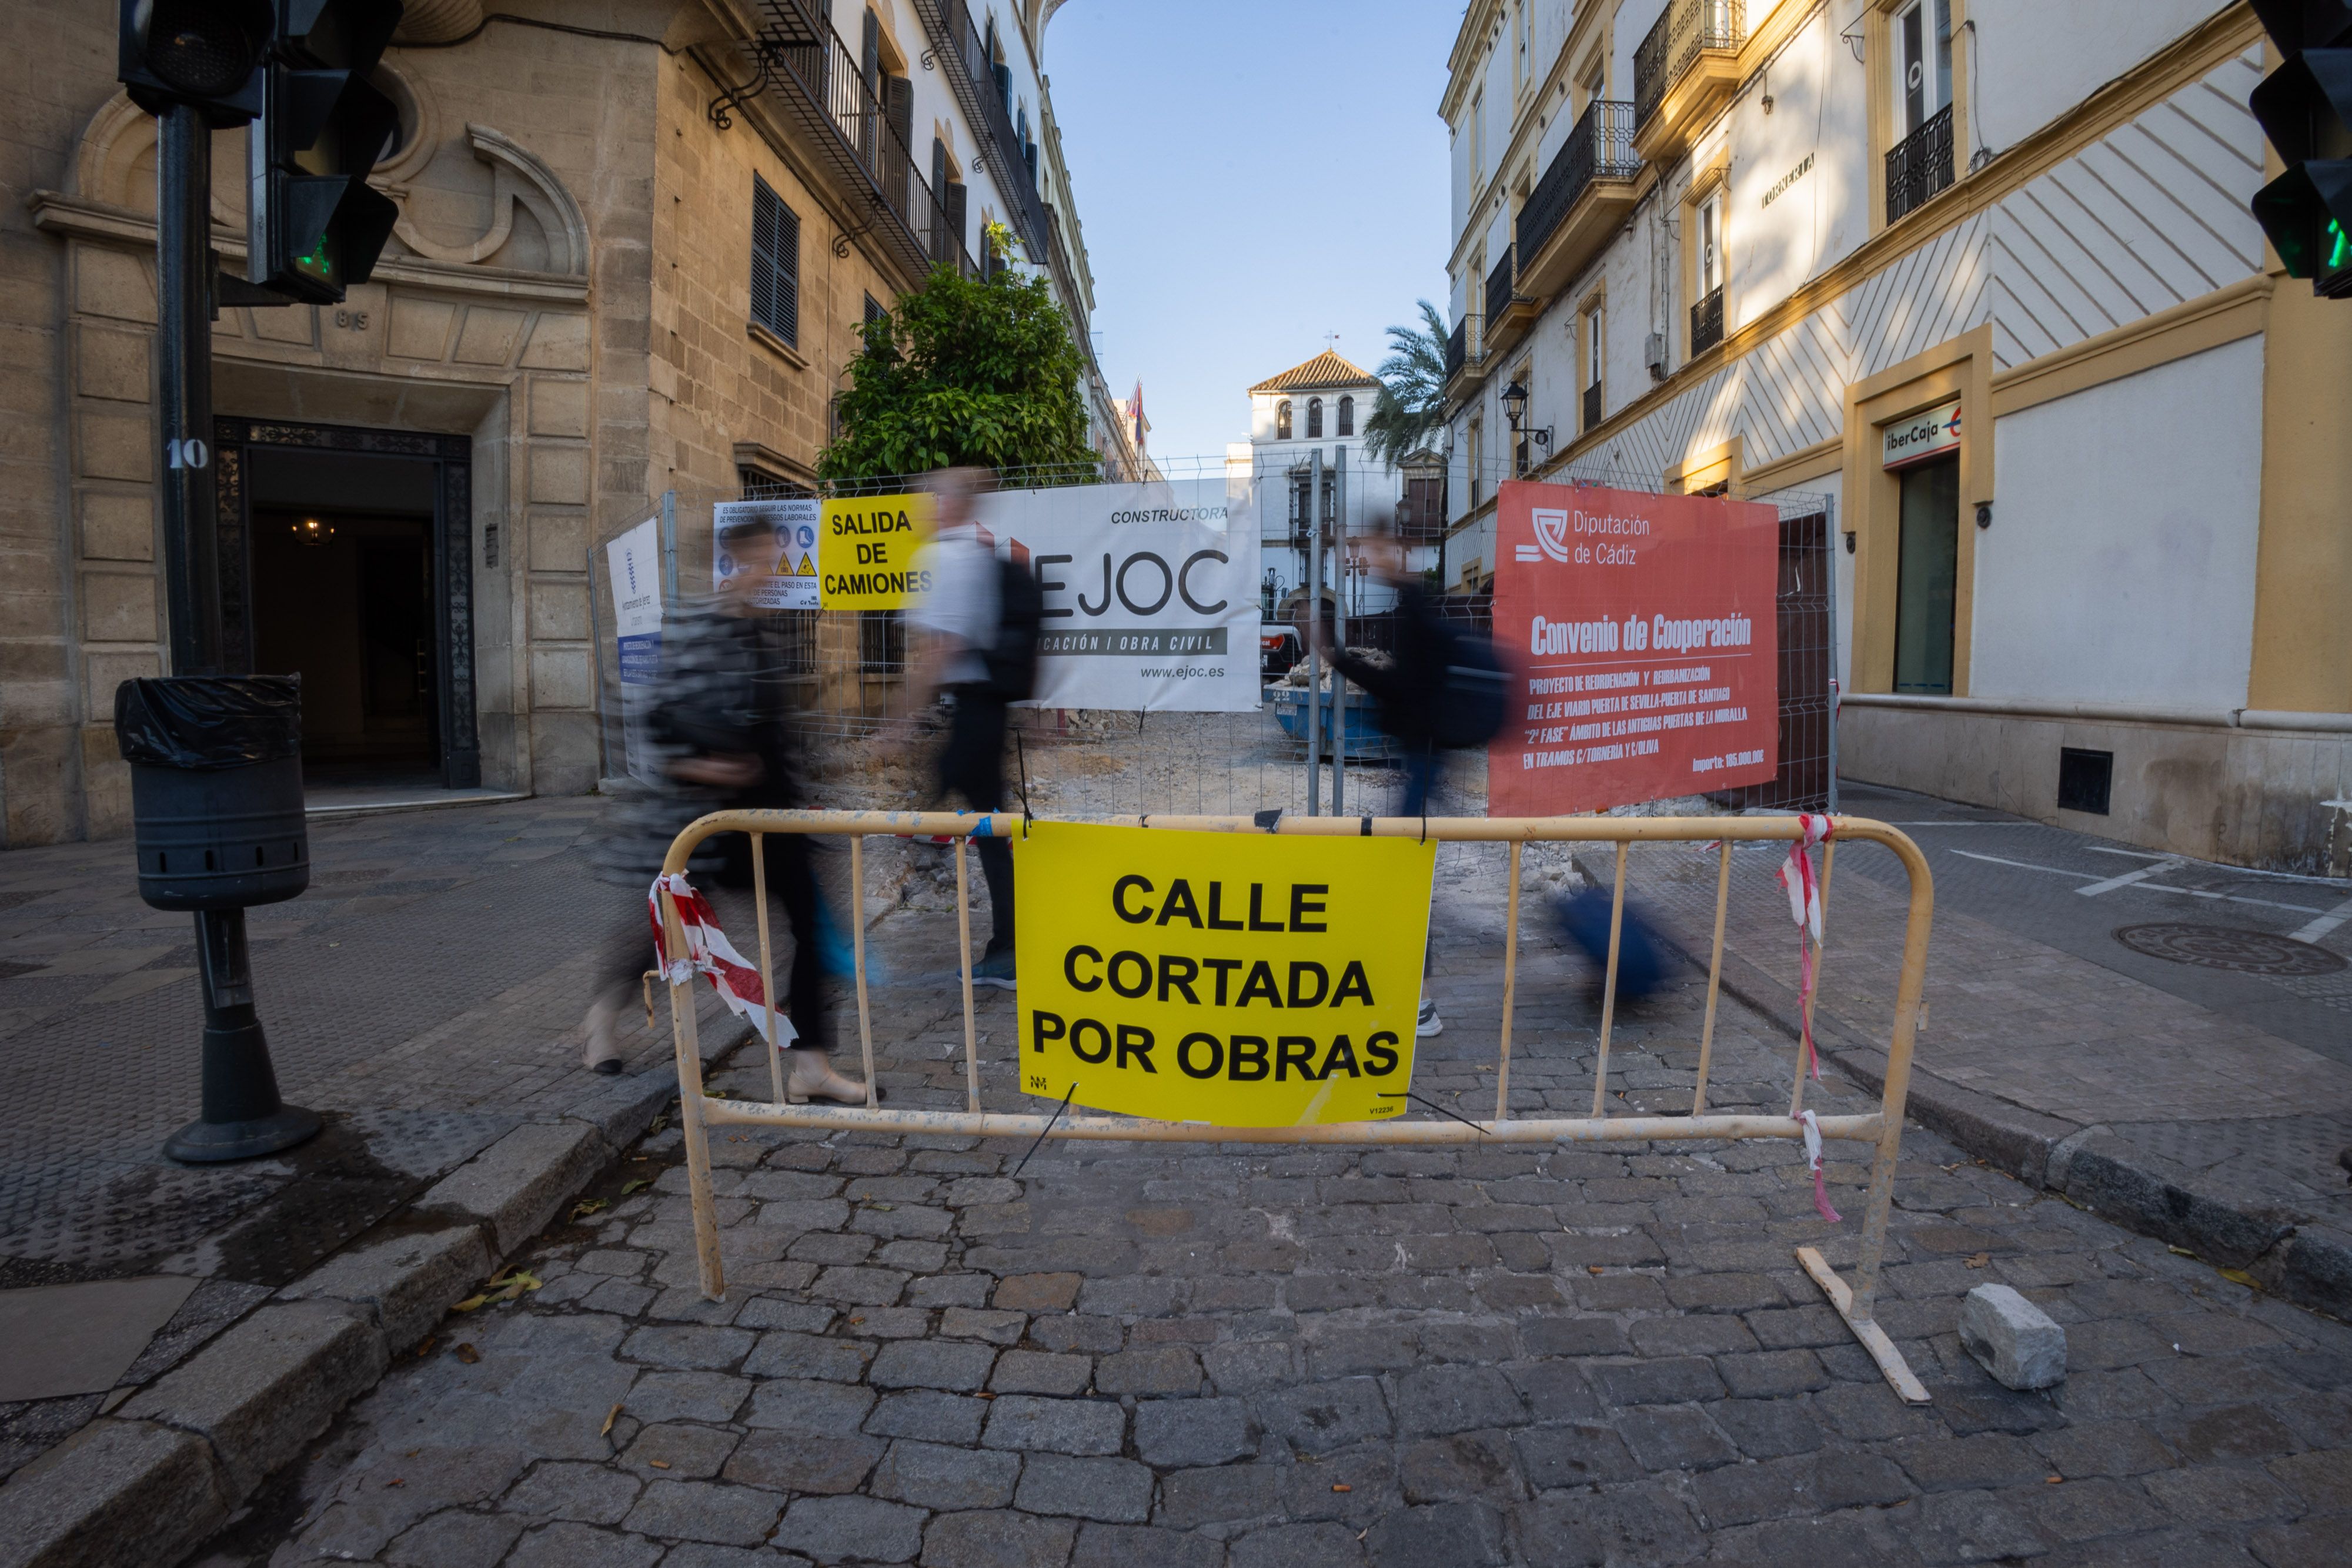 Estrella, Cena y Amor no podrán salir de sus templos. Vera Cruz, desde los Marianistas. La Puerta de Sevilla, cerrada por obras.